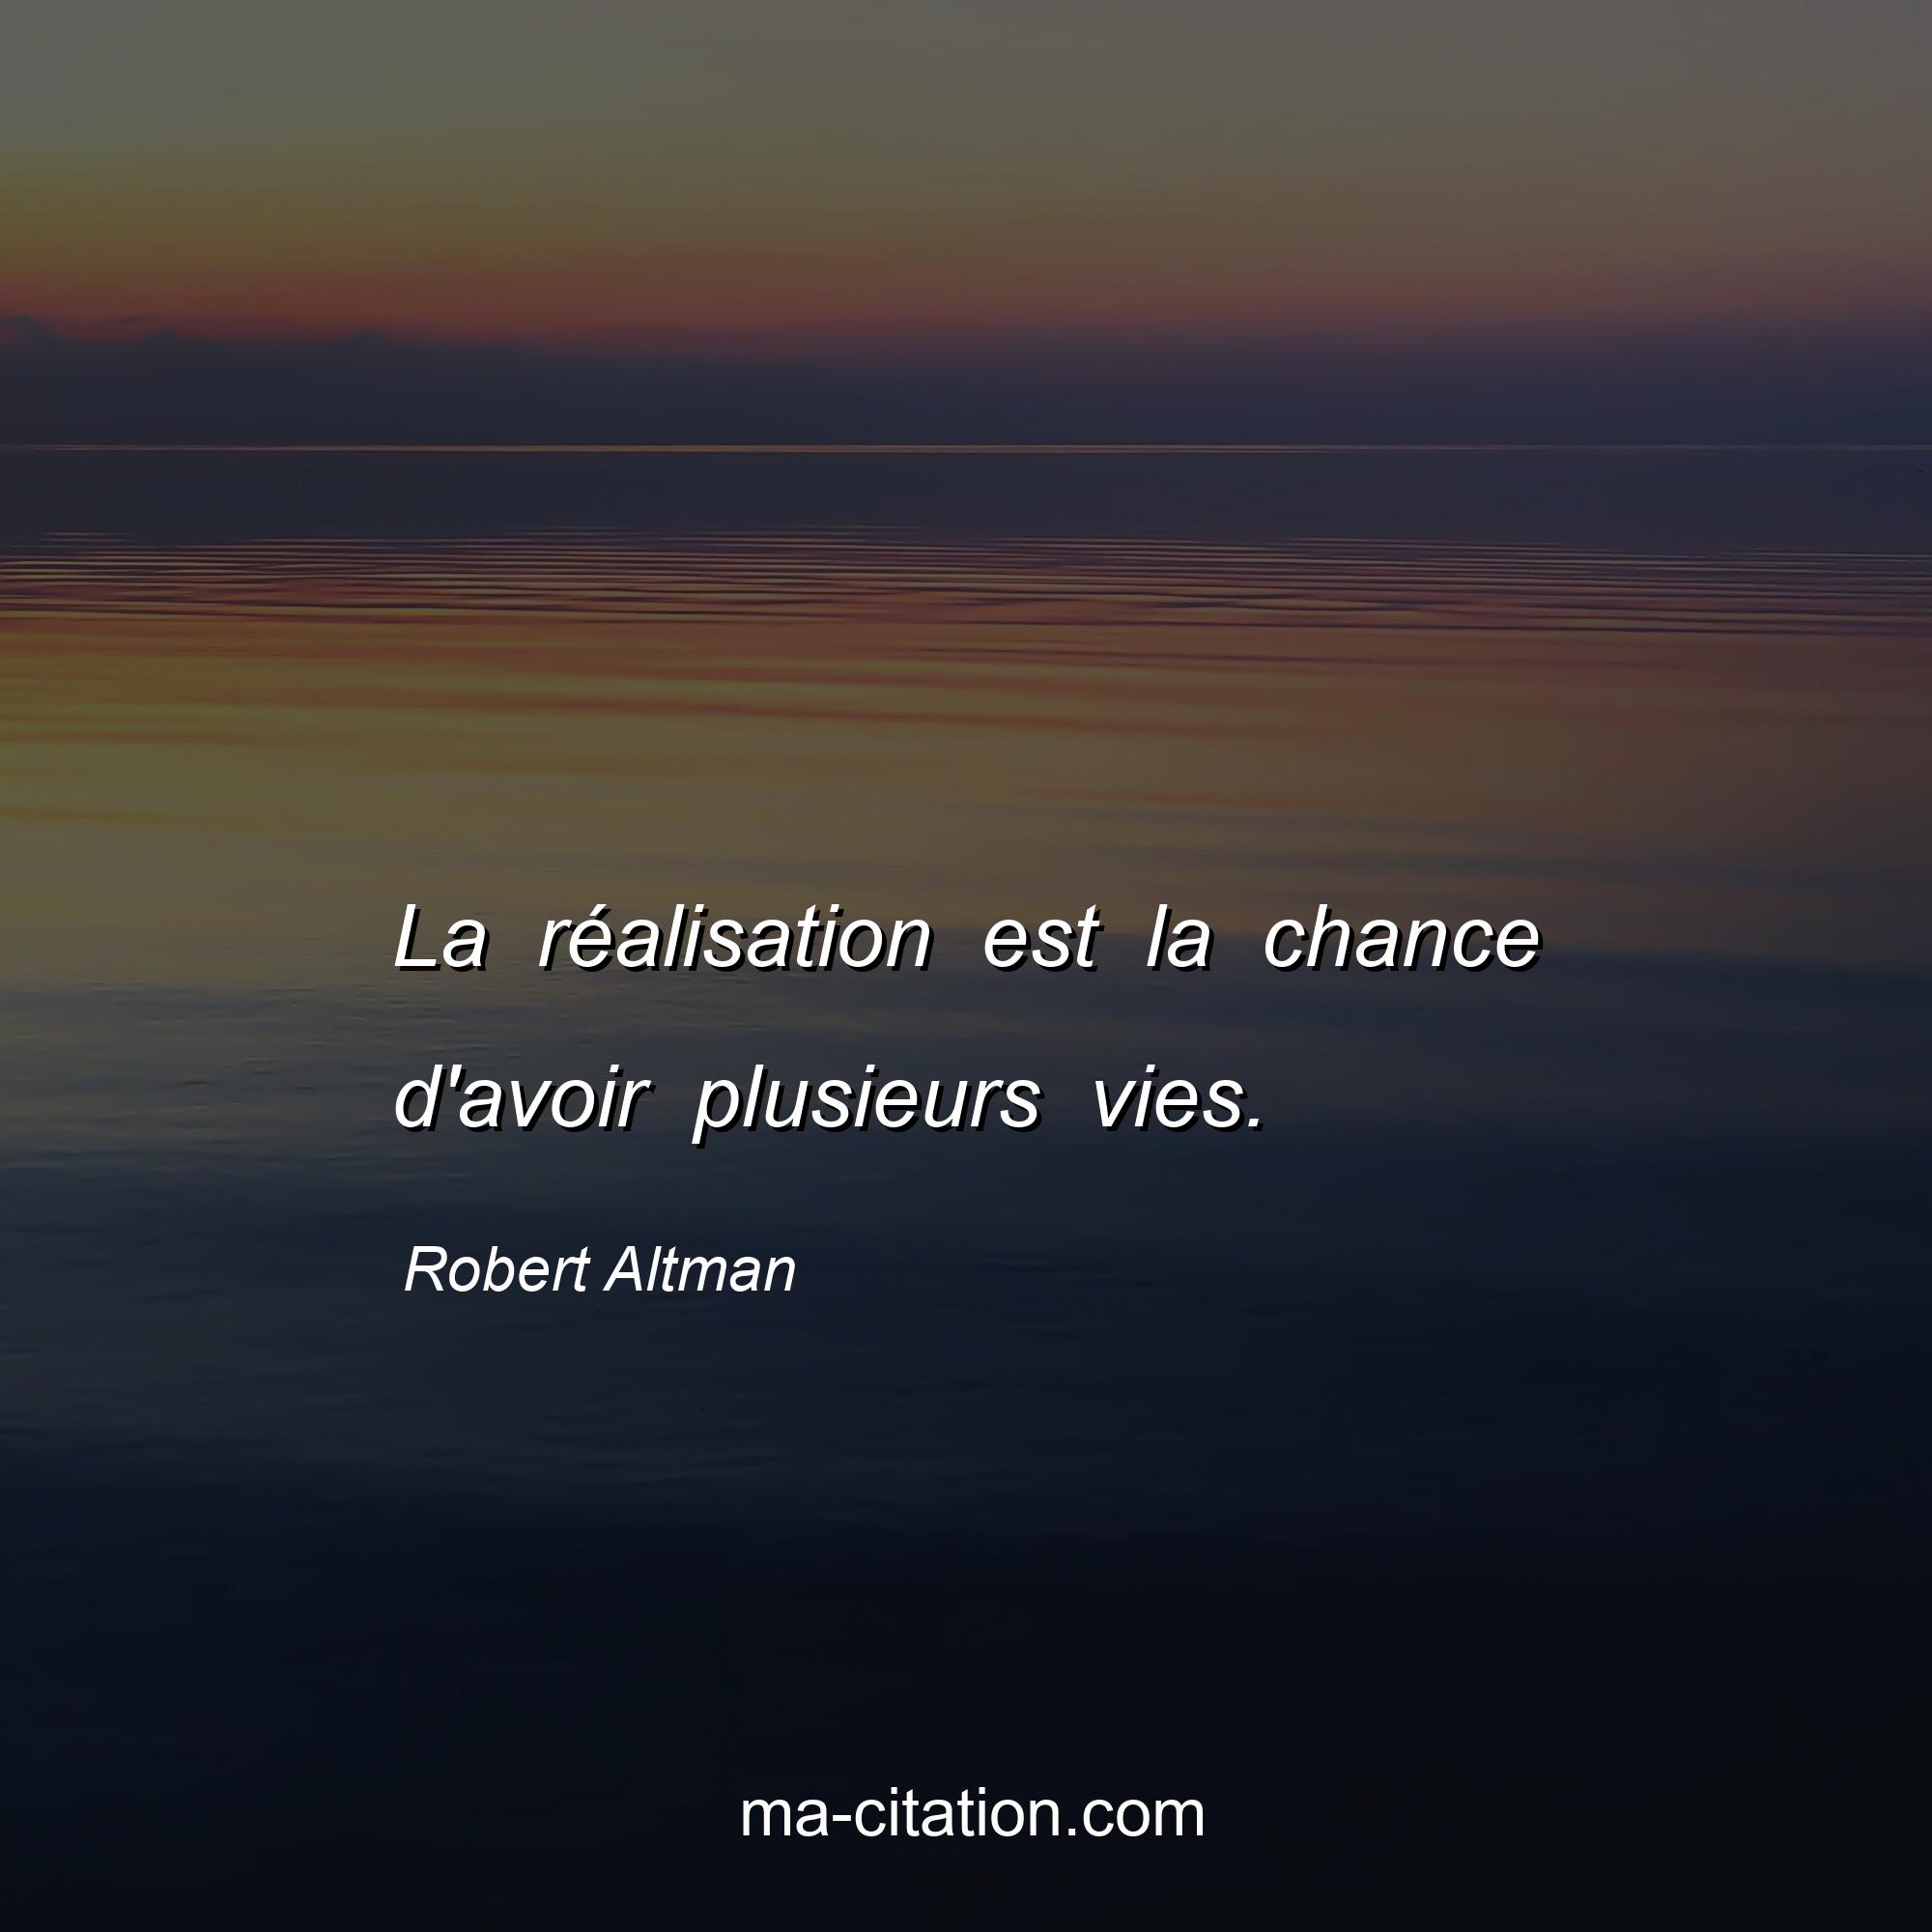 Robert Altman : La réalisation est la chance d'avoir plusieurs vies.